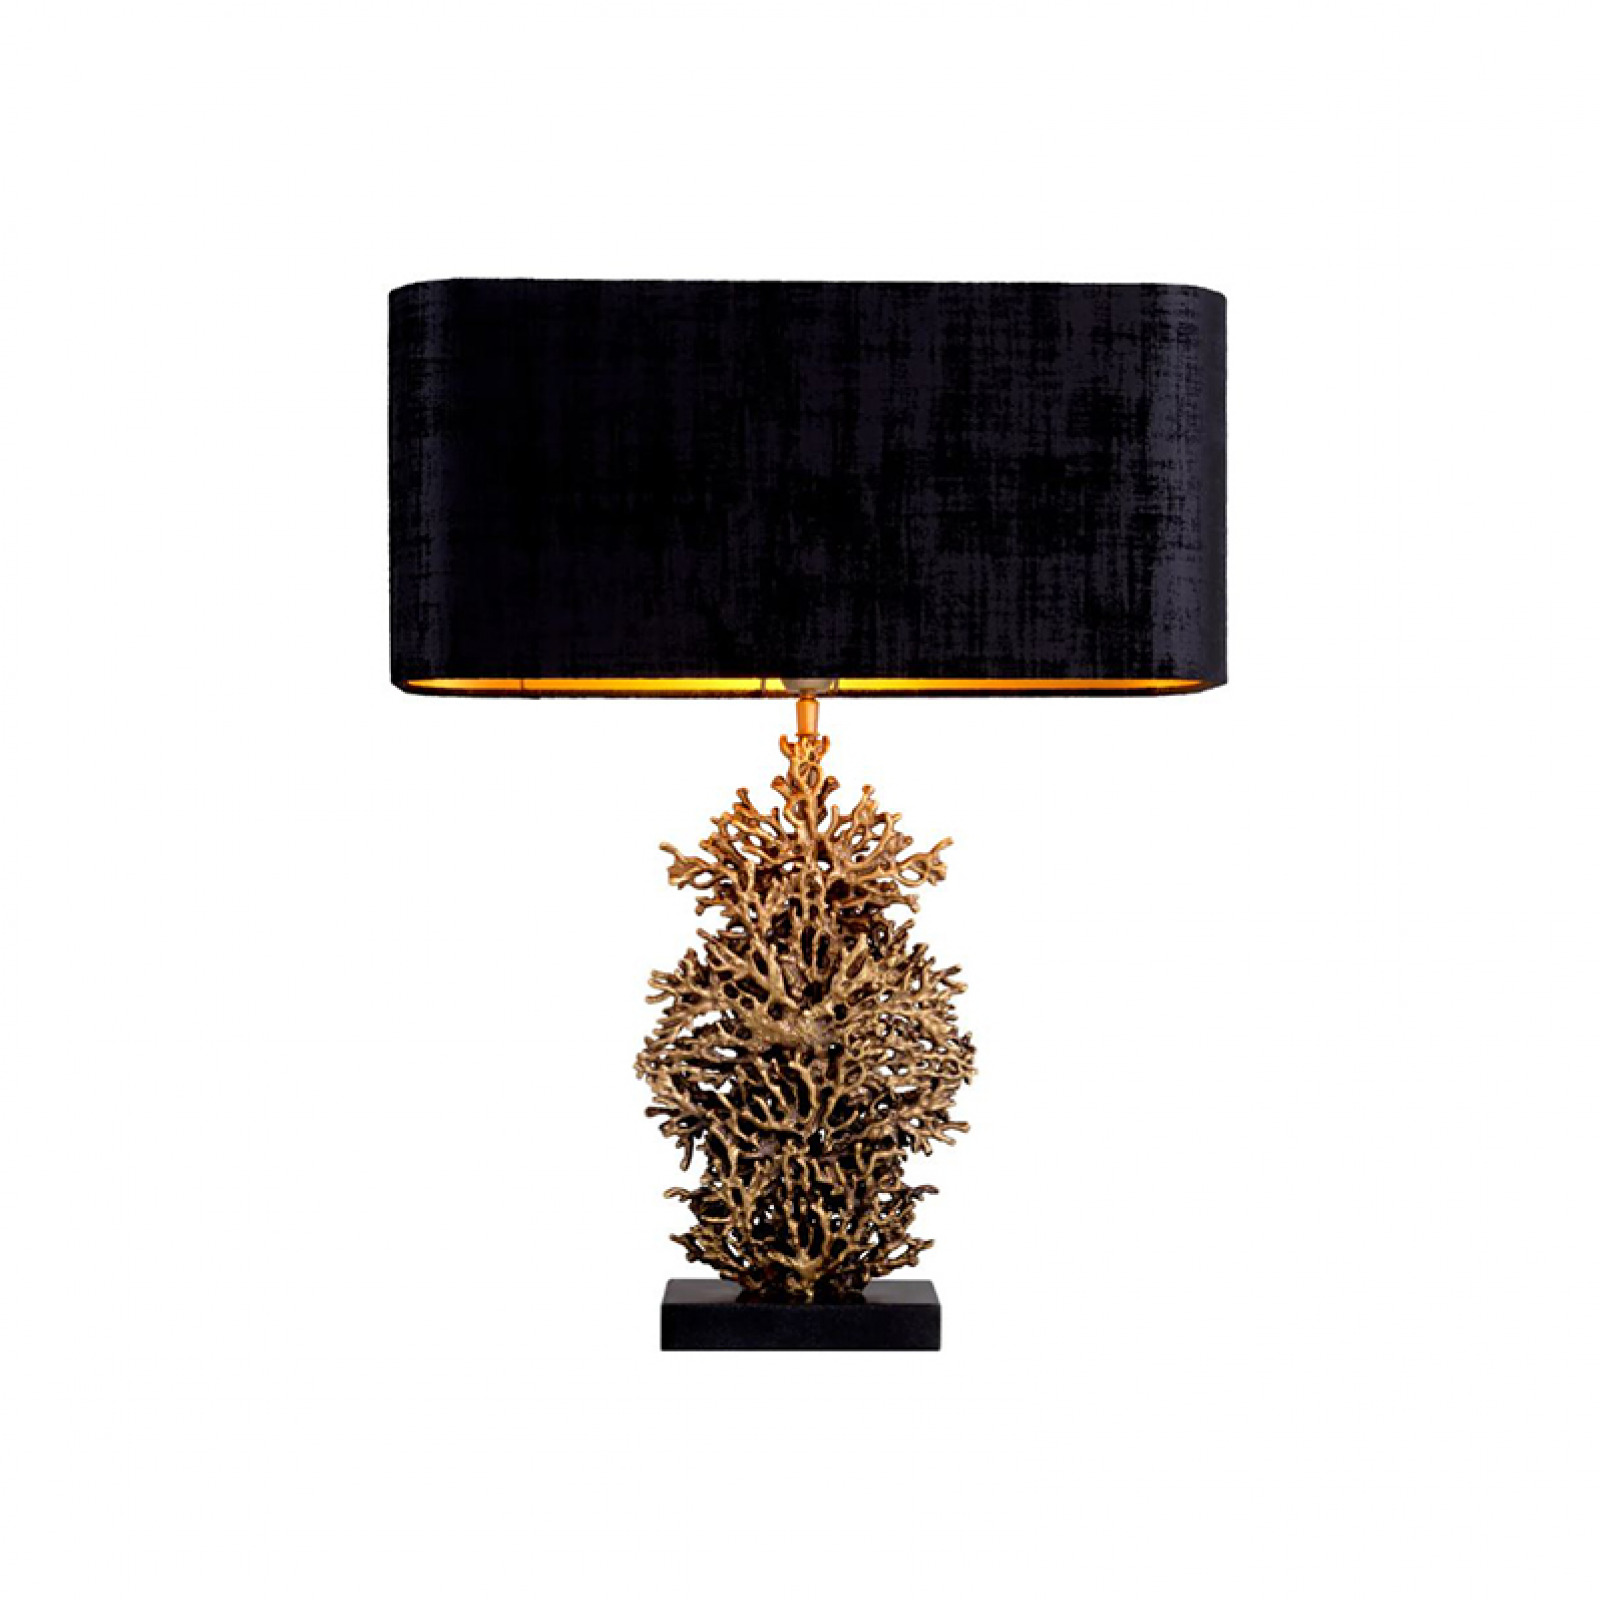 Corallo table lamp